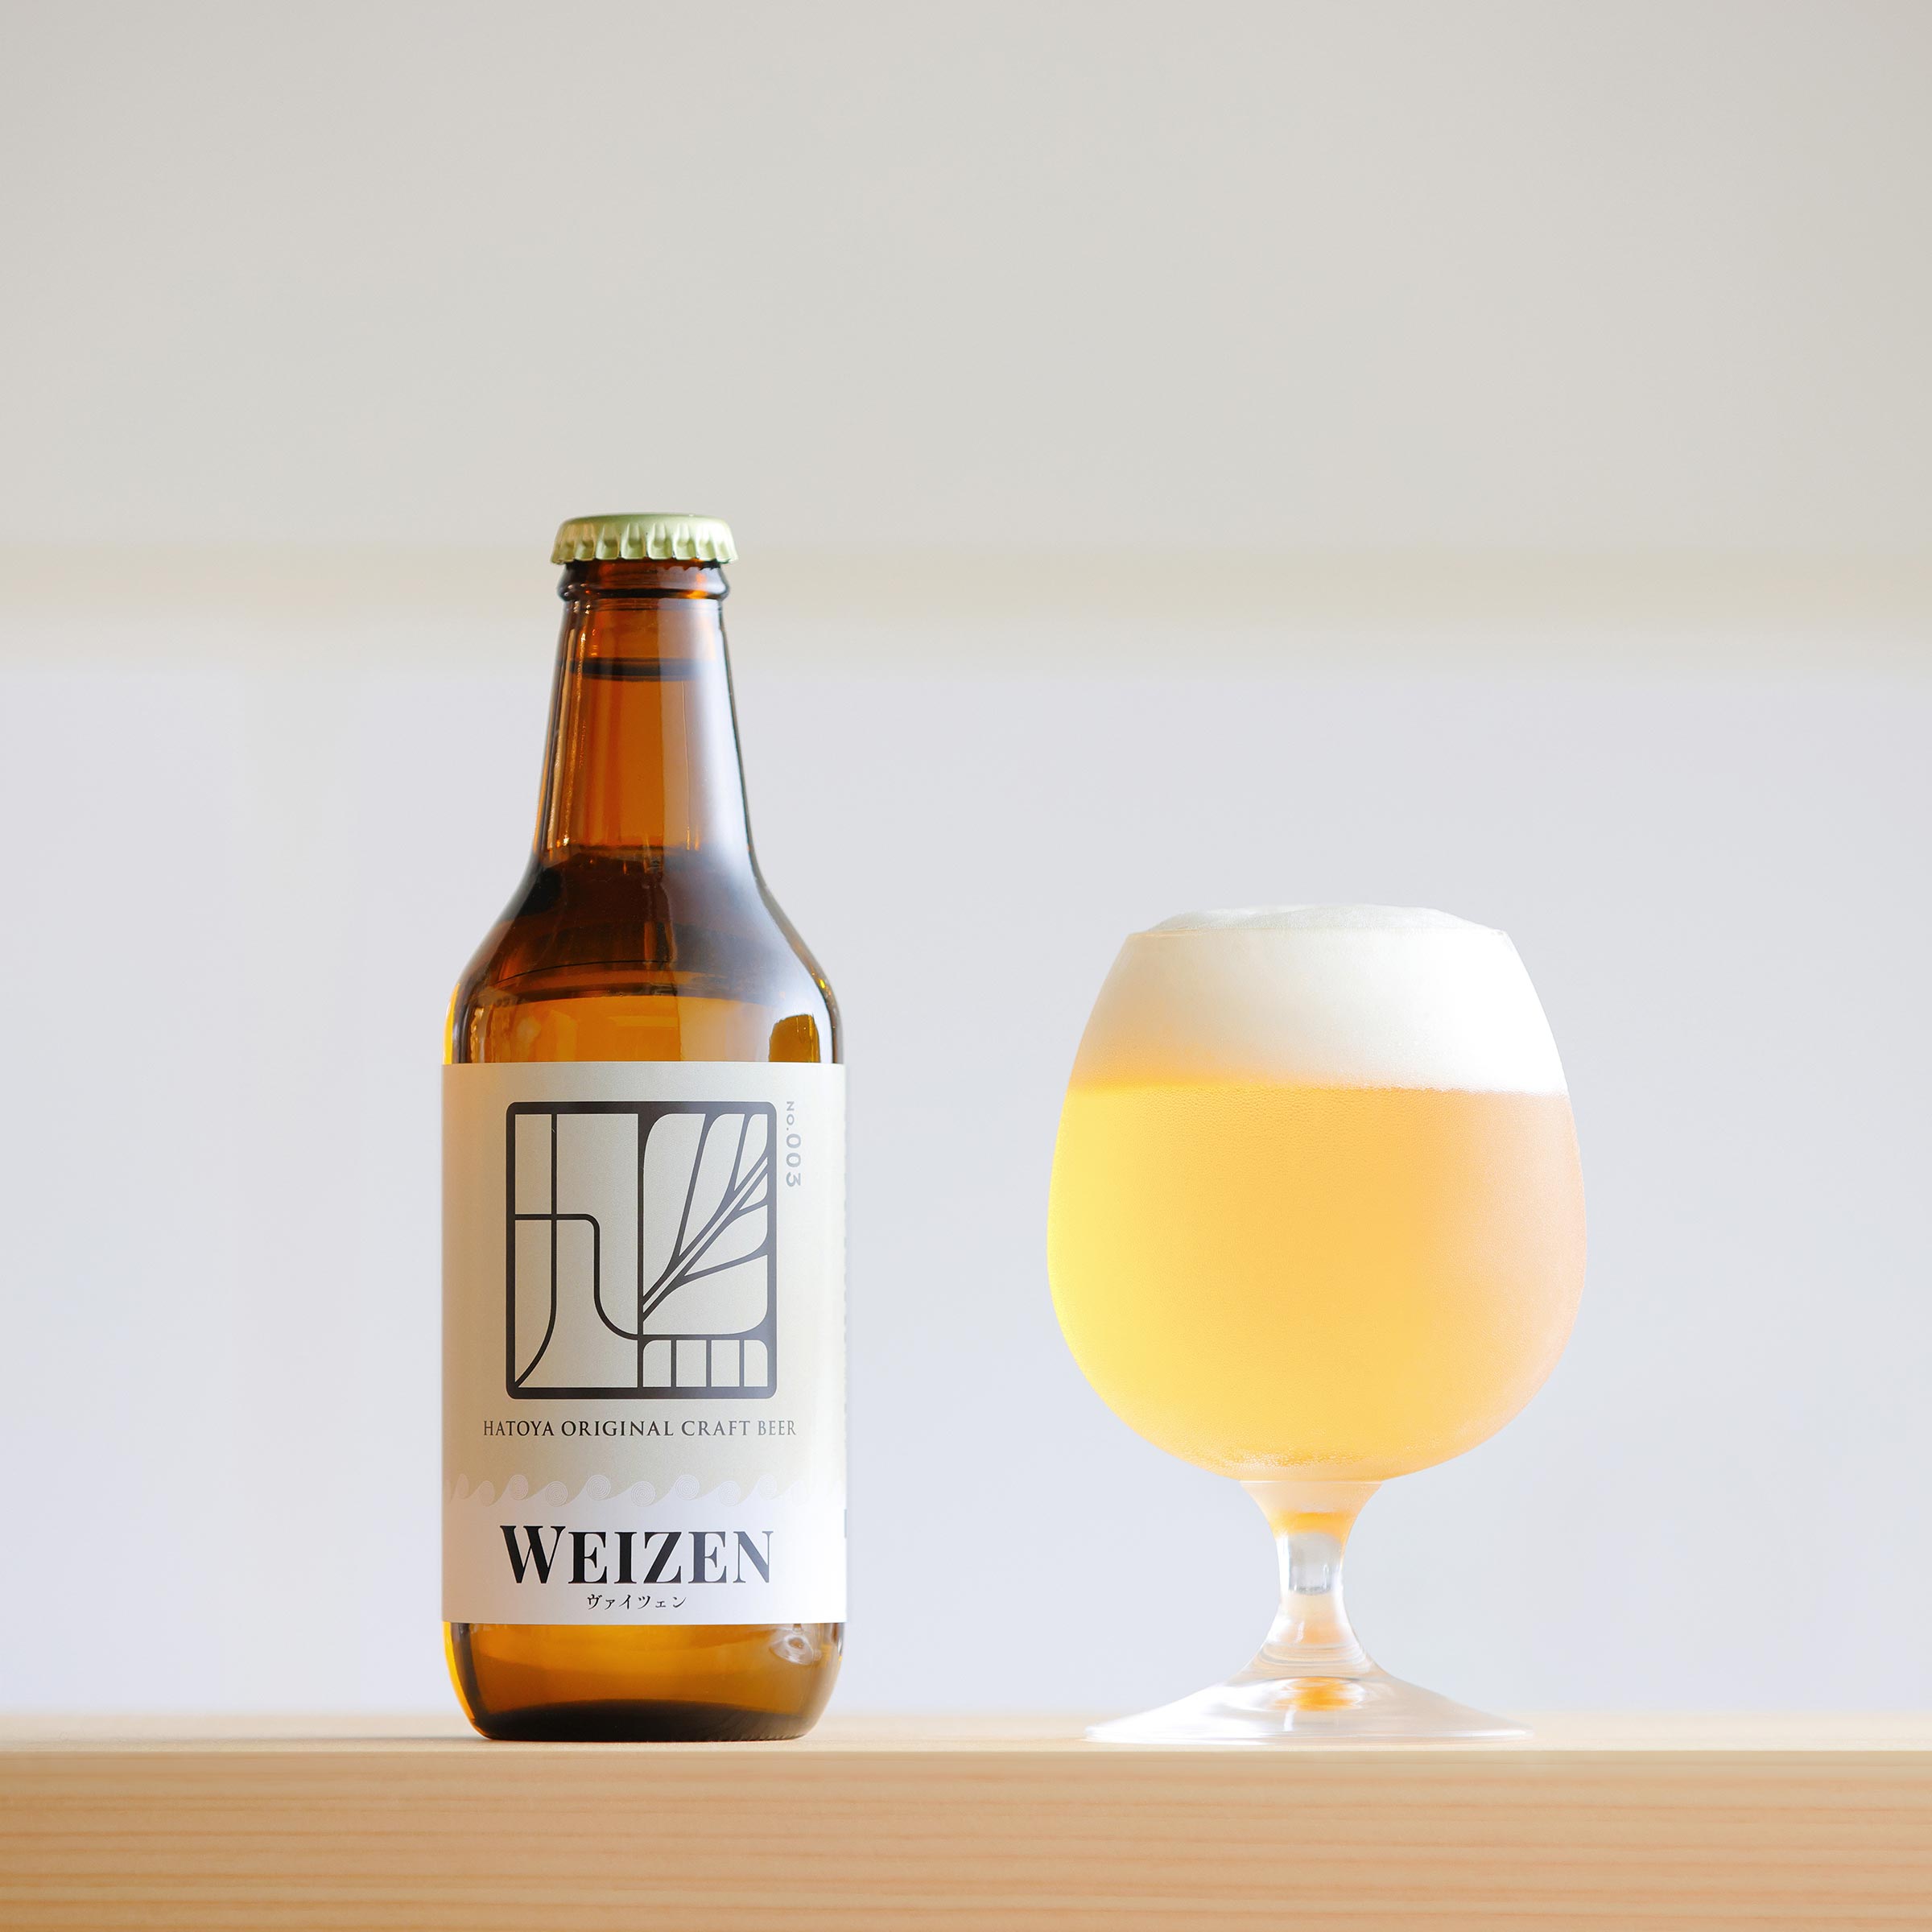 ヴァイツェンのボトルと、グラスに注いだビールの写真